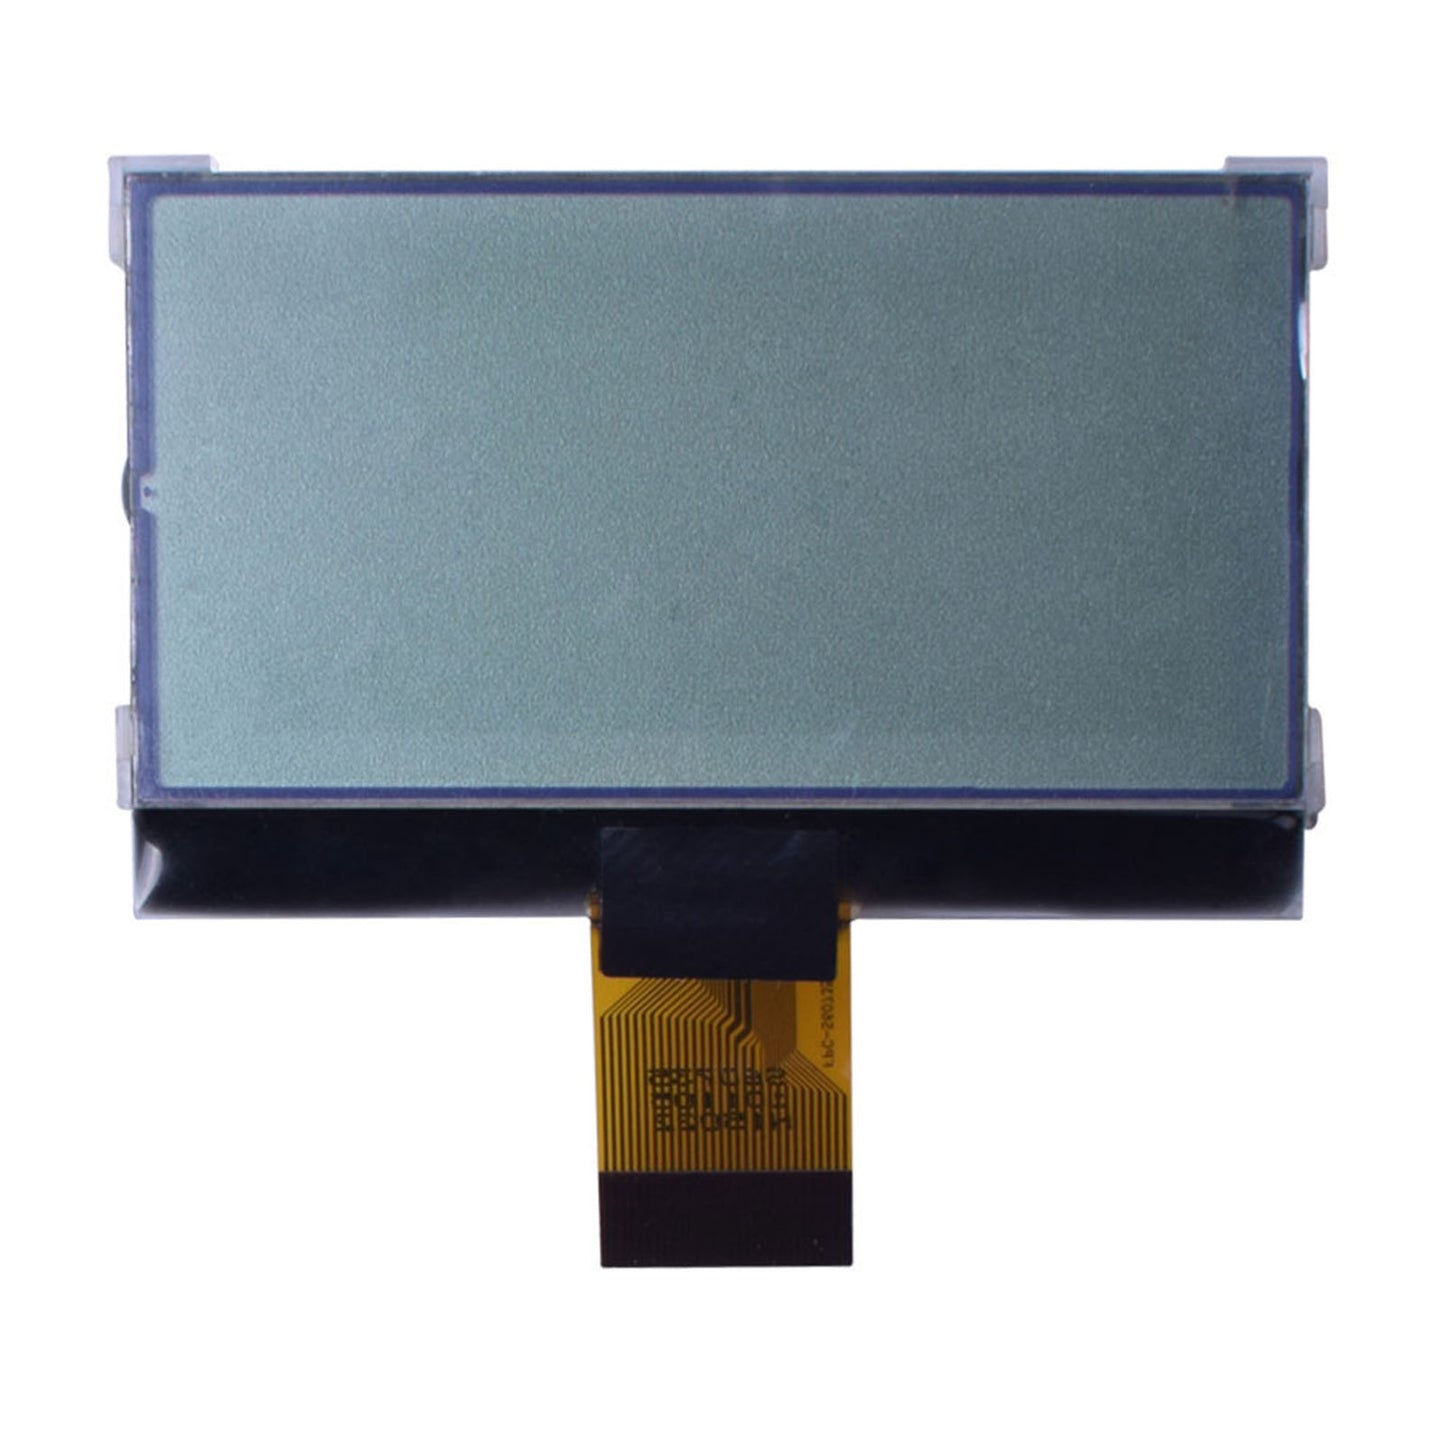 DisplayModule 2.61" 128x64 COG Graphic LCD - MCU